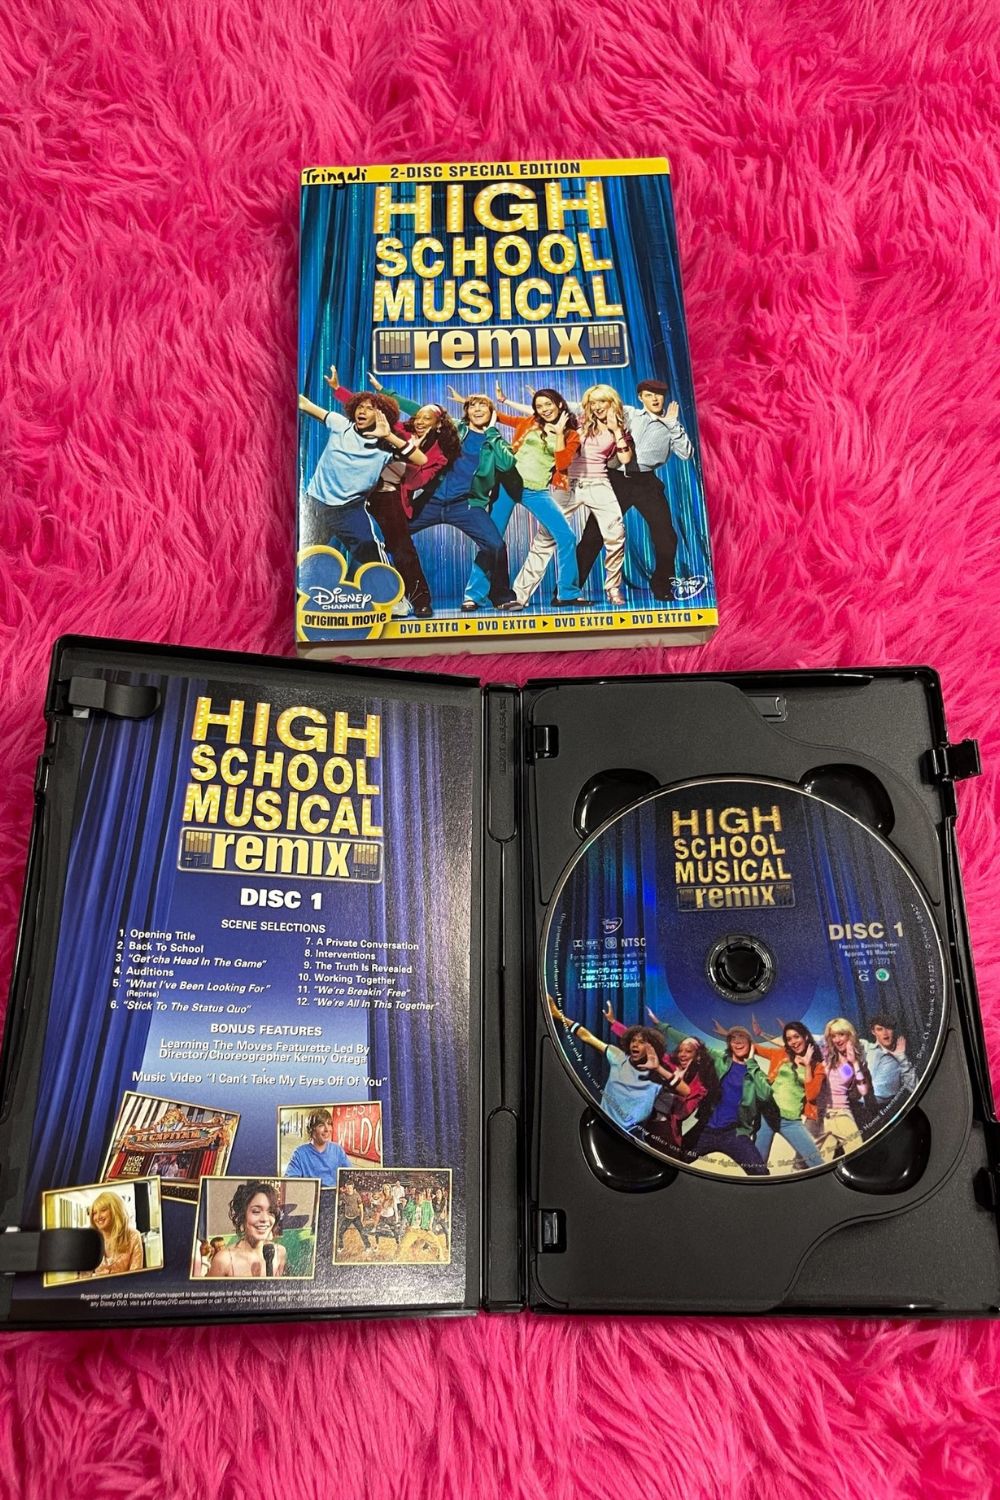 HIGH SCHOOL MUSICAL REMIX DVD*